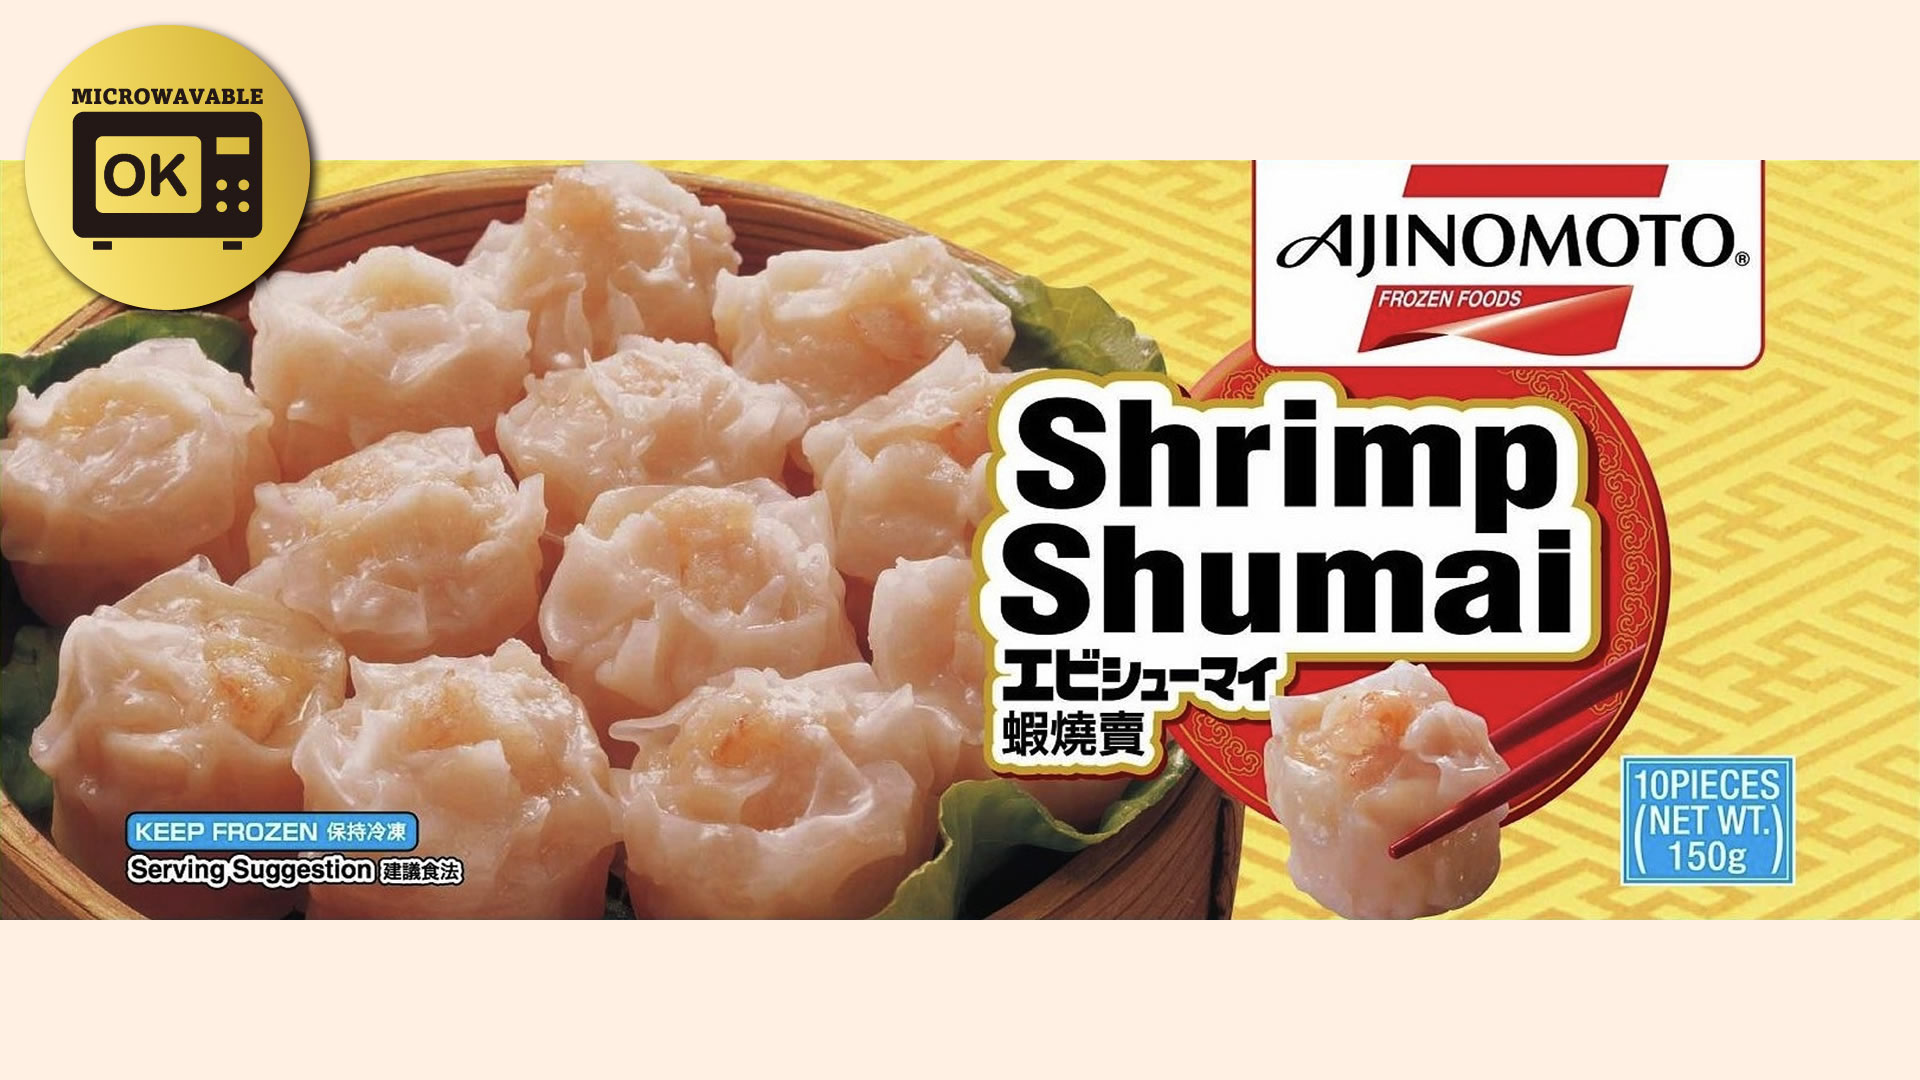 Shrimp Shumai (Retail)